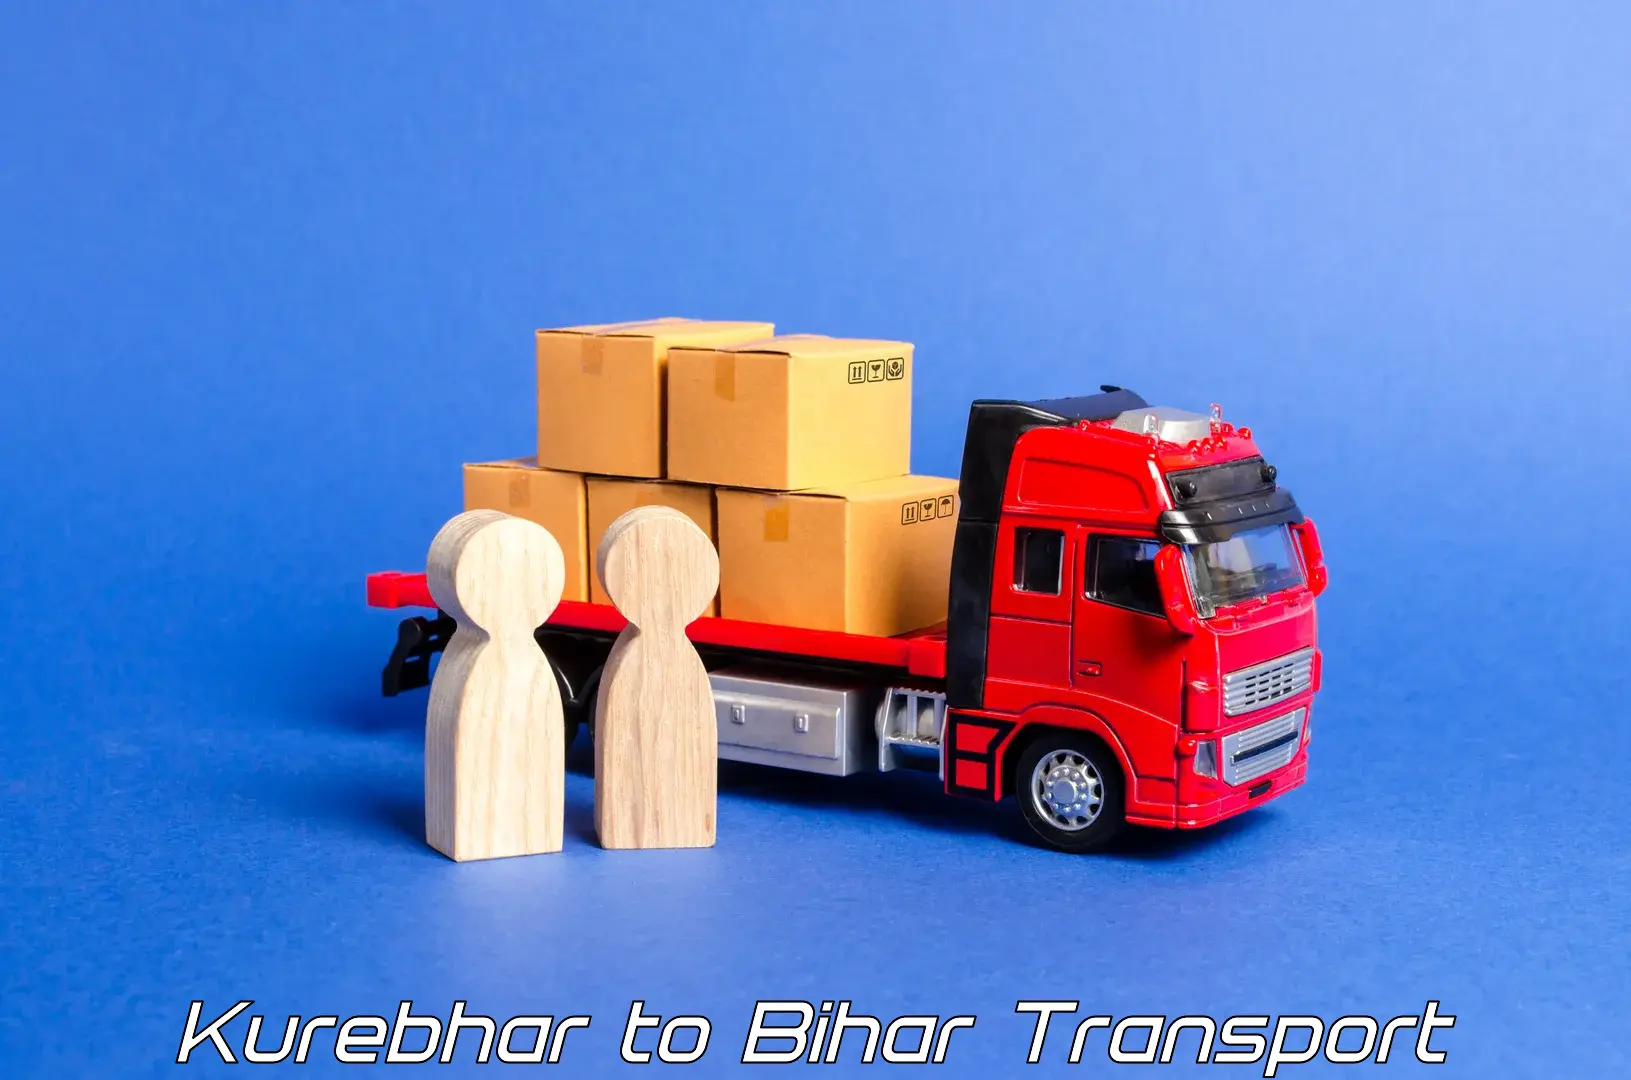 Road transport online services Kurebhar to Sheohar